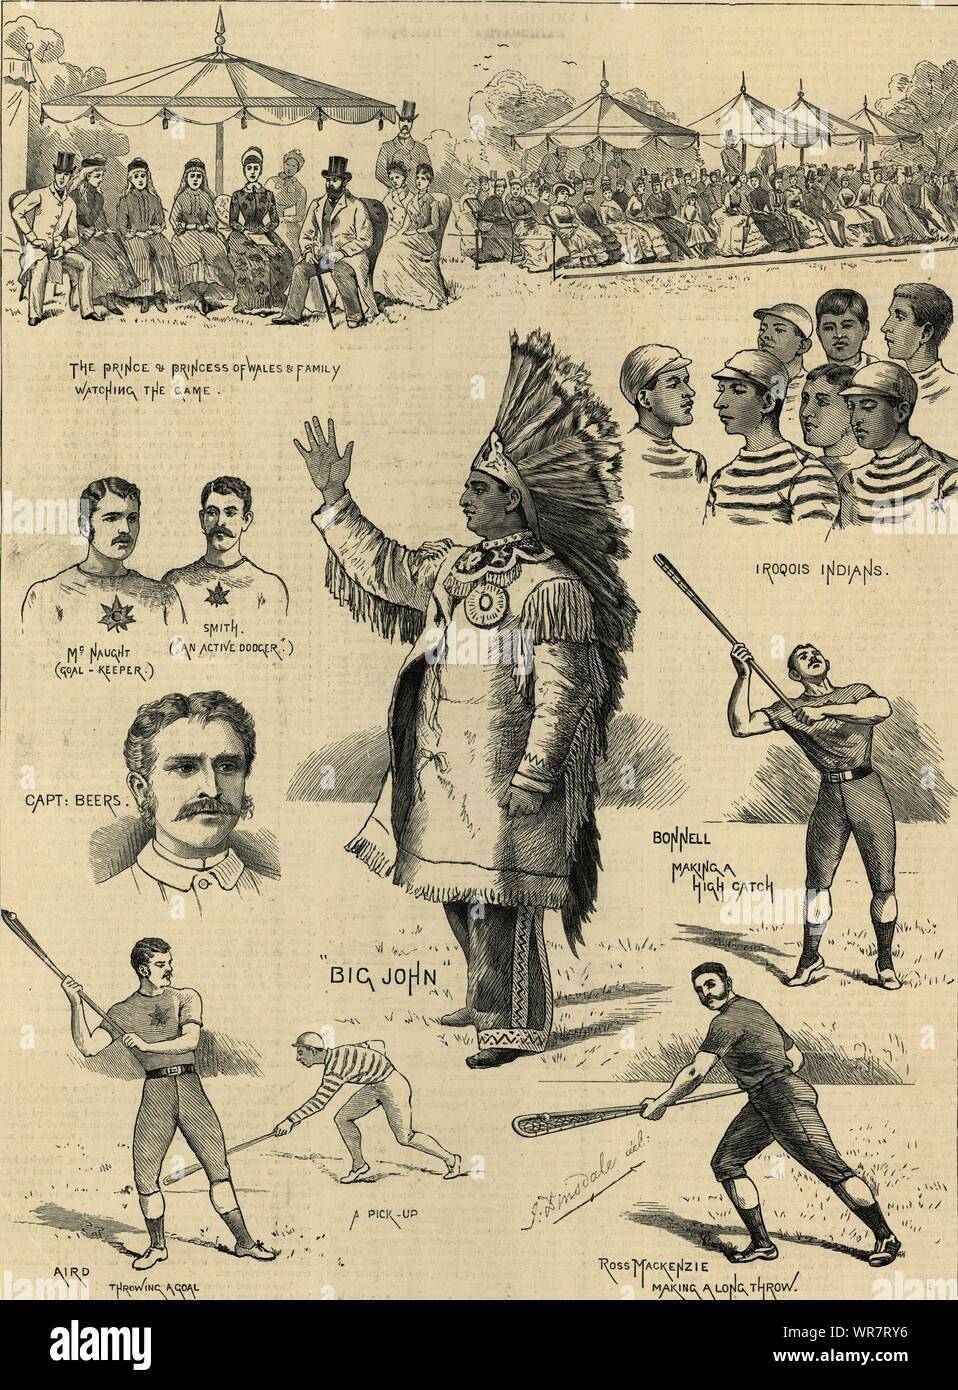 Das kanadische Spiel von Lacrosse, spielte in Hurlingham. London. Sport 1883 Stockfoto